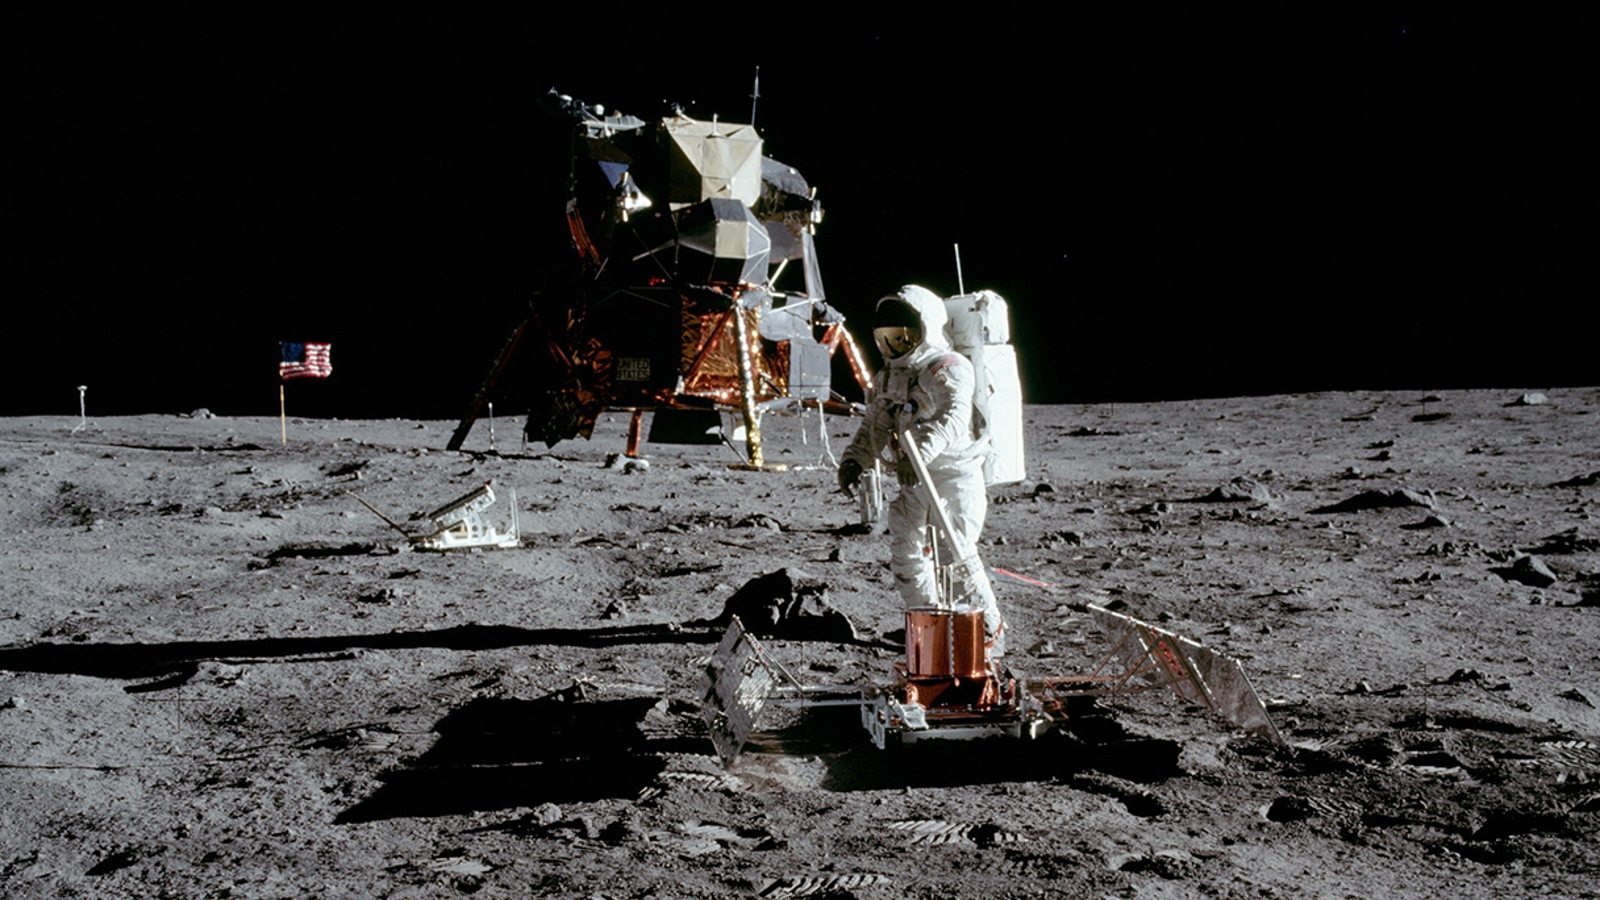 Apollo astronauts on the moon